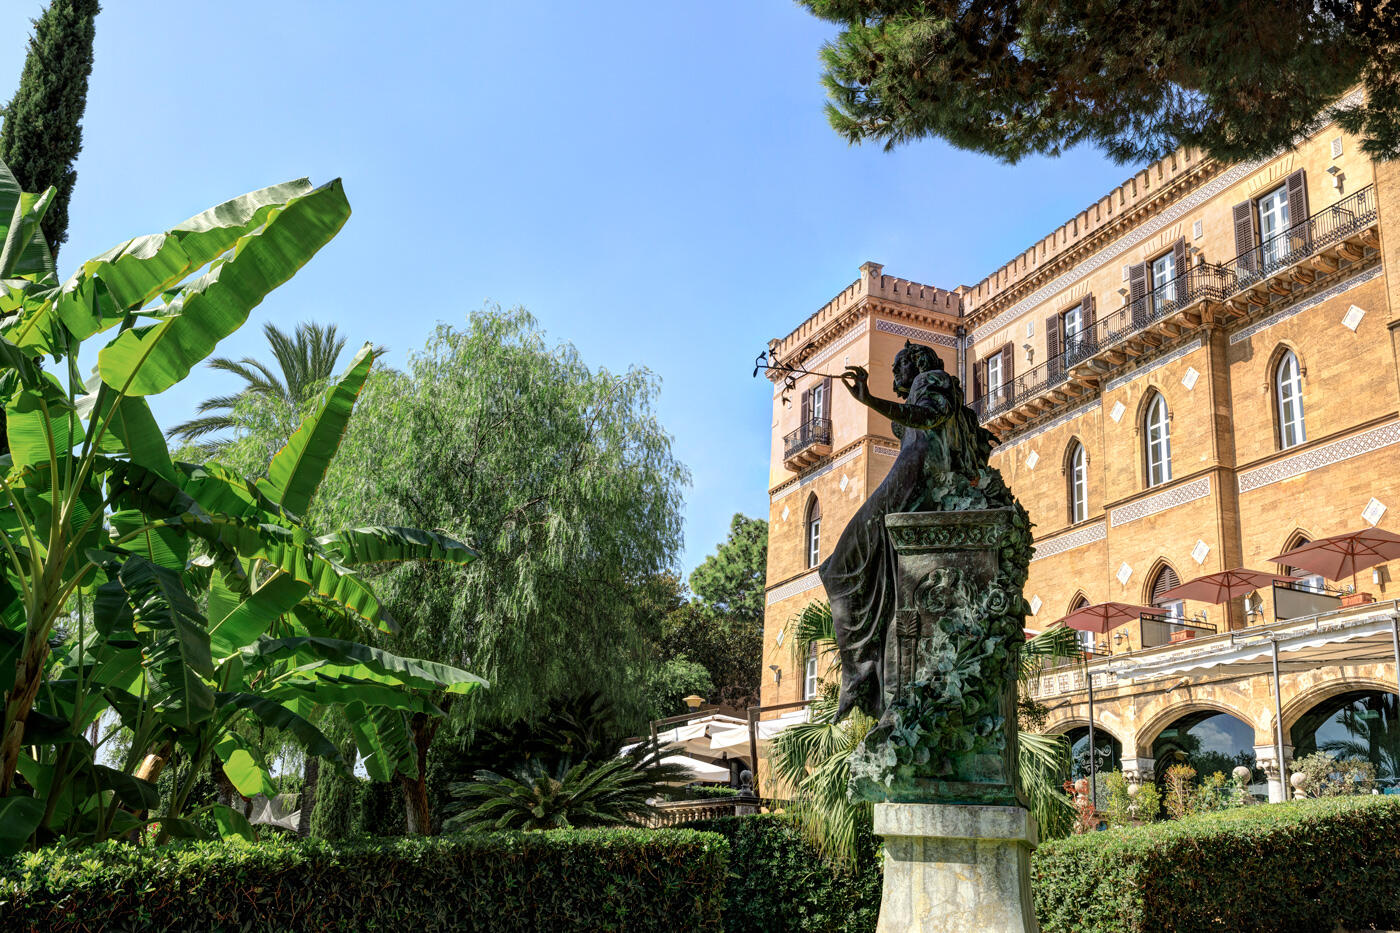 Villa Igiea im Jugendstil mit hellbrauner Fassade. Drumherum wachsen grüne Pflanzen. im Vordergrund sieht man eine Statue.